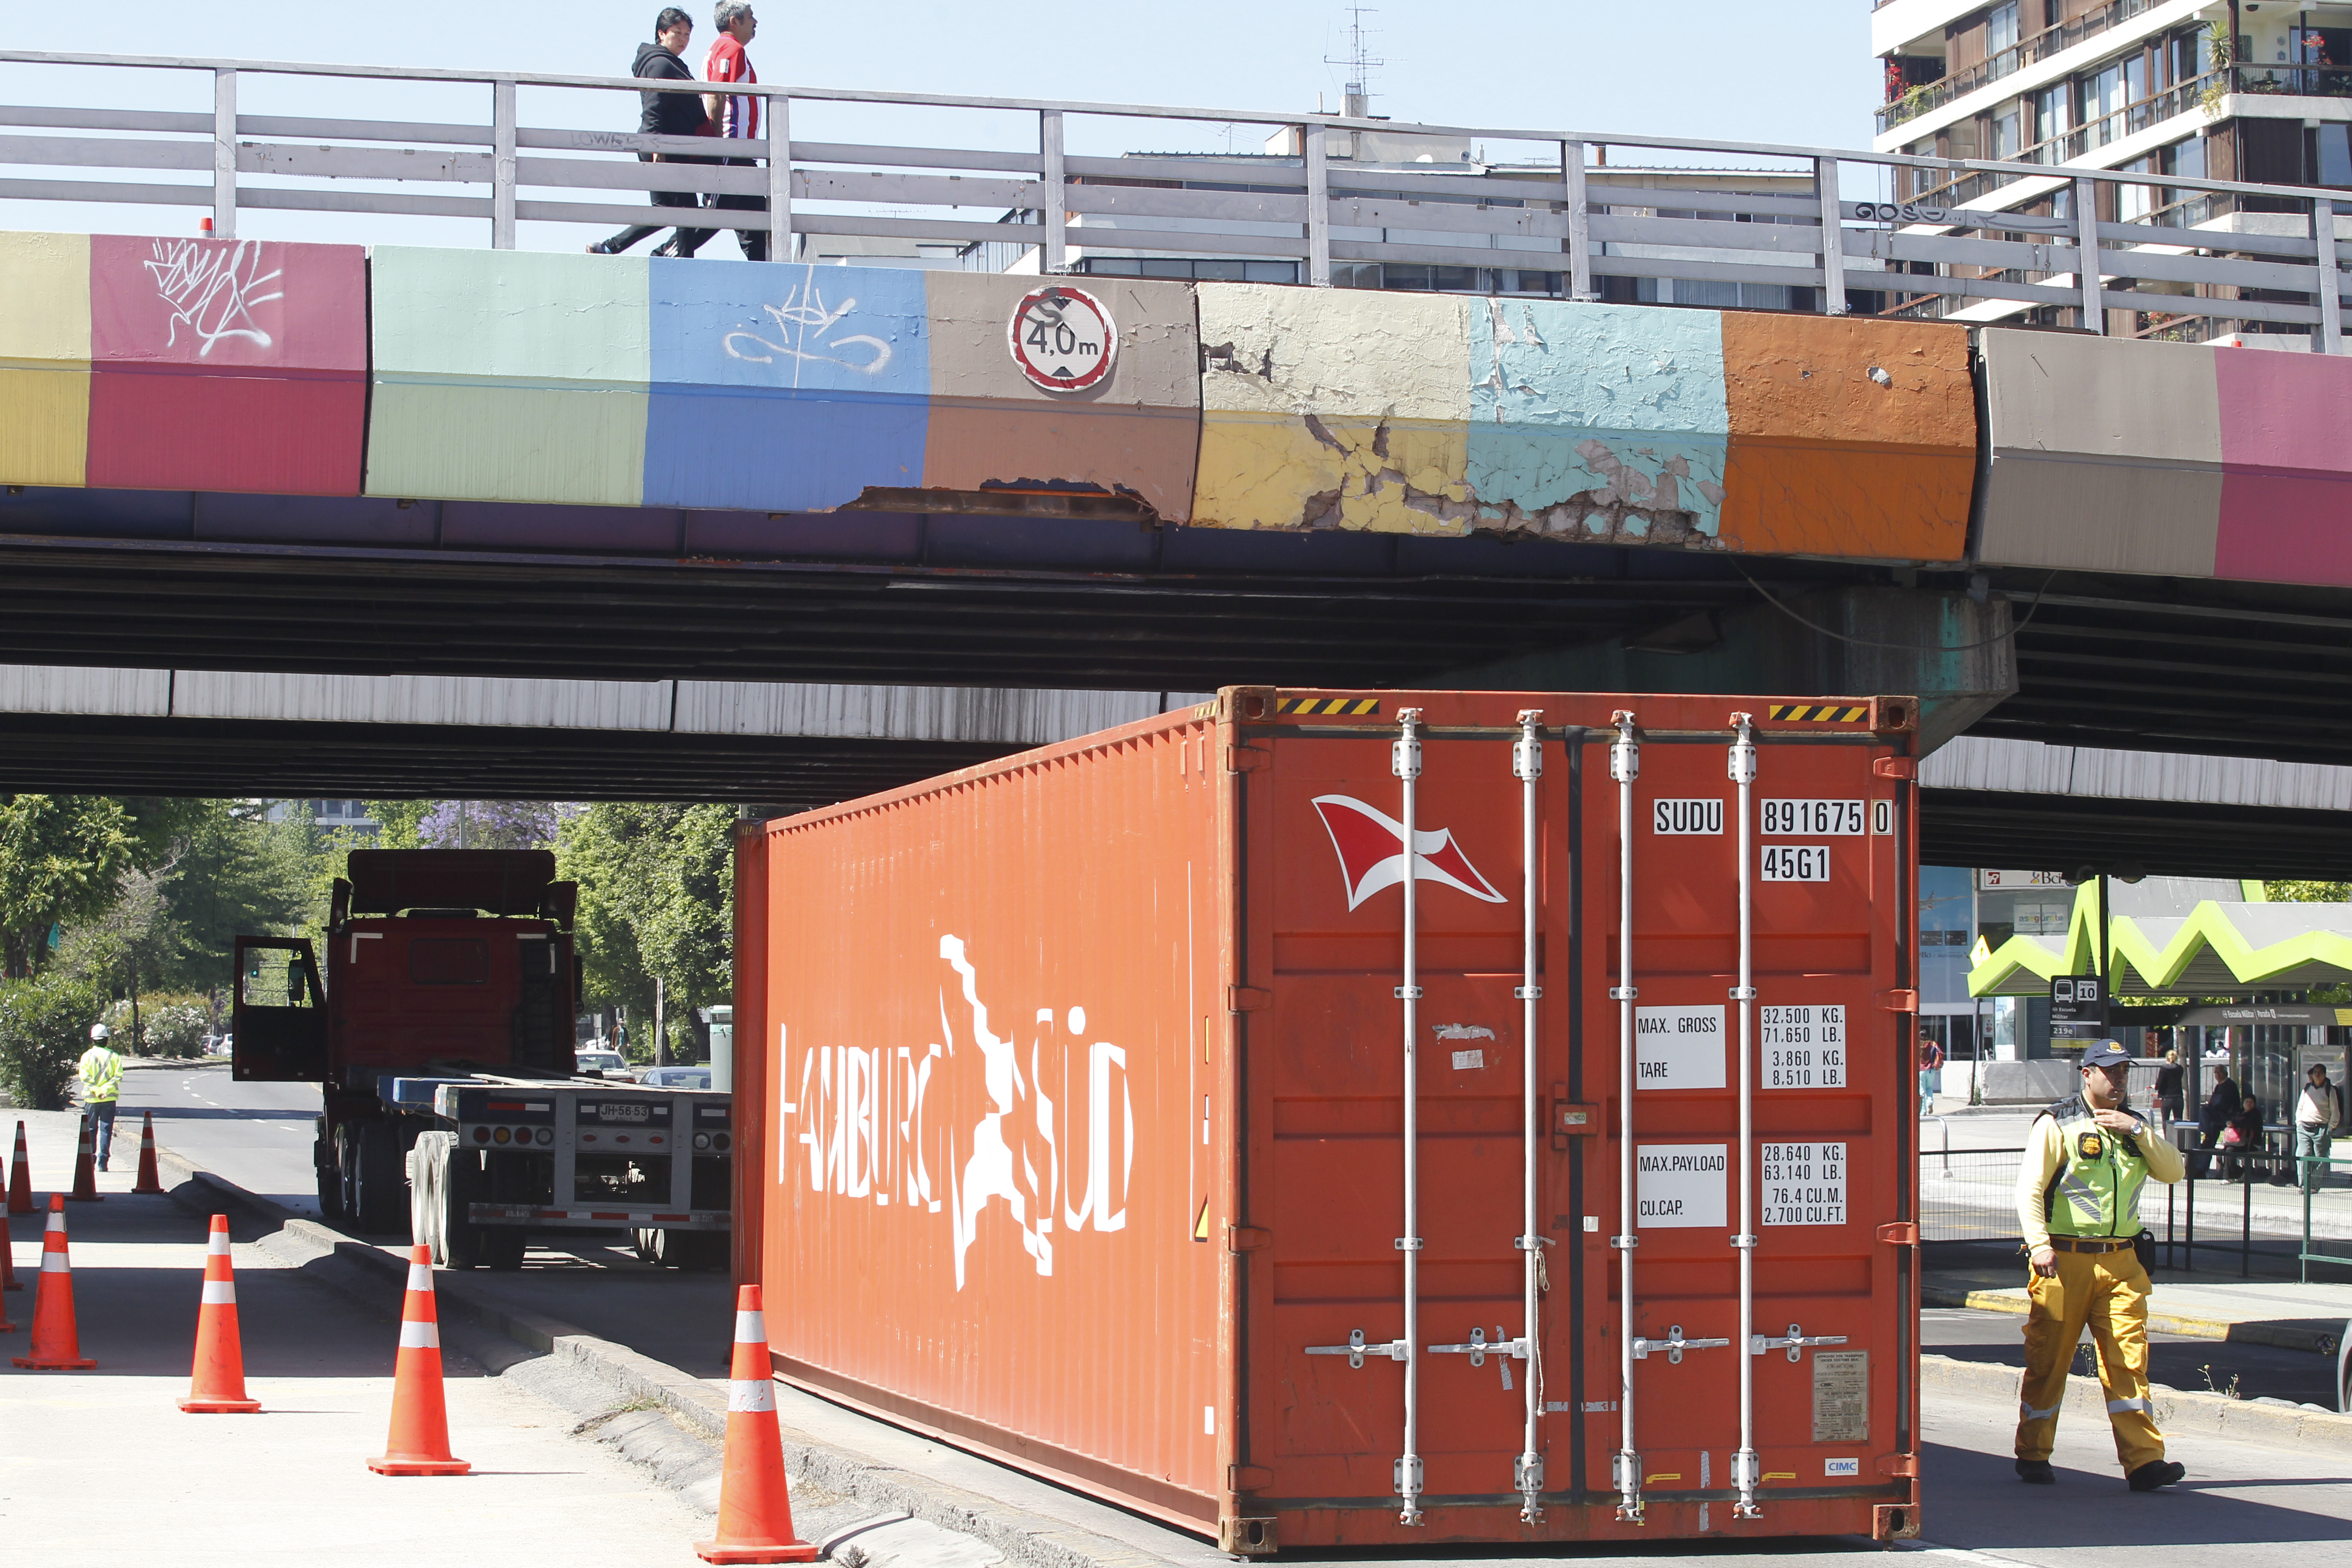 Camion no logra pasar el puente de Escuela Mililtar con container